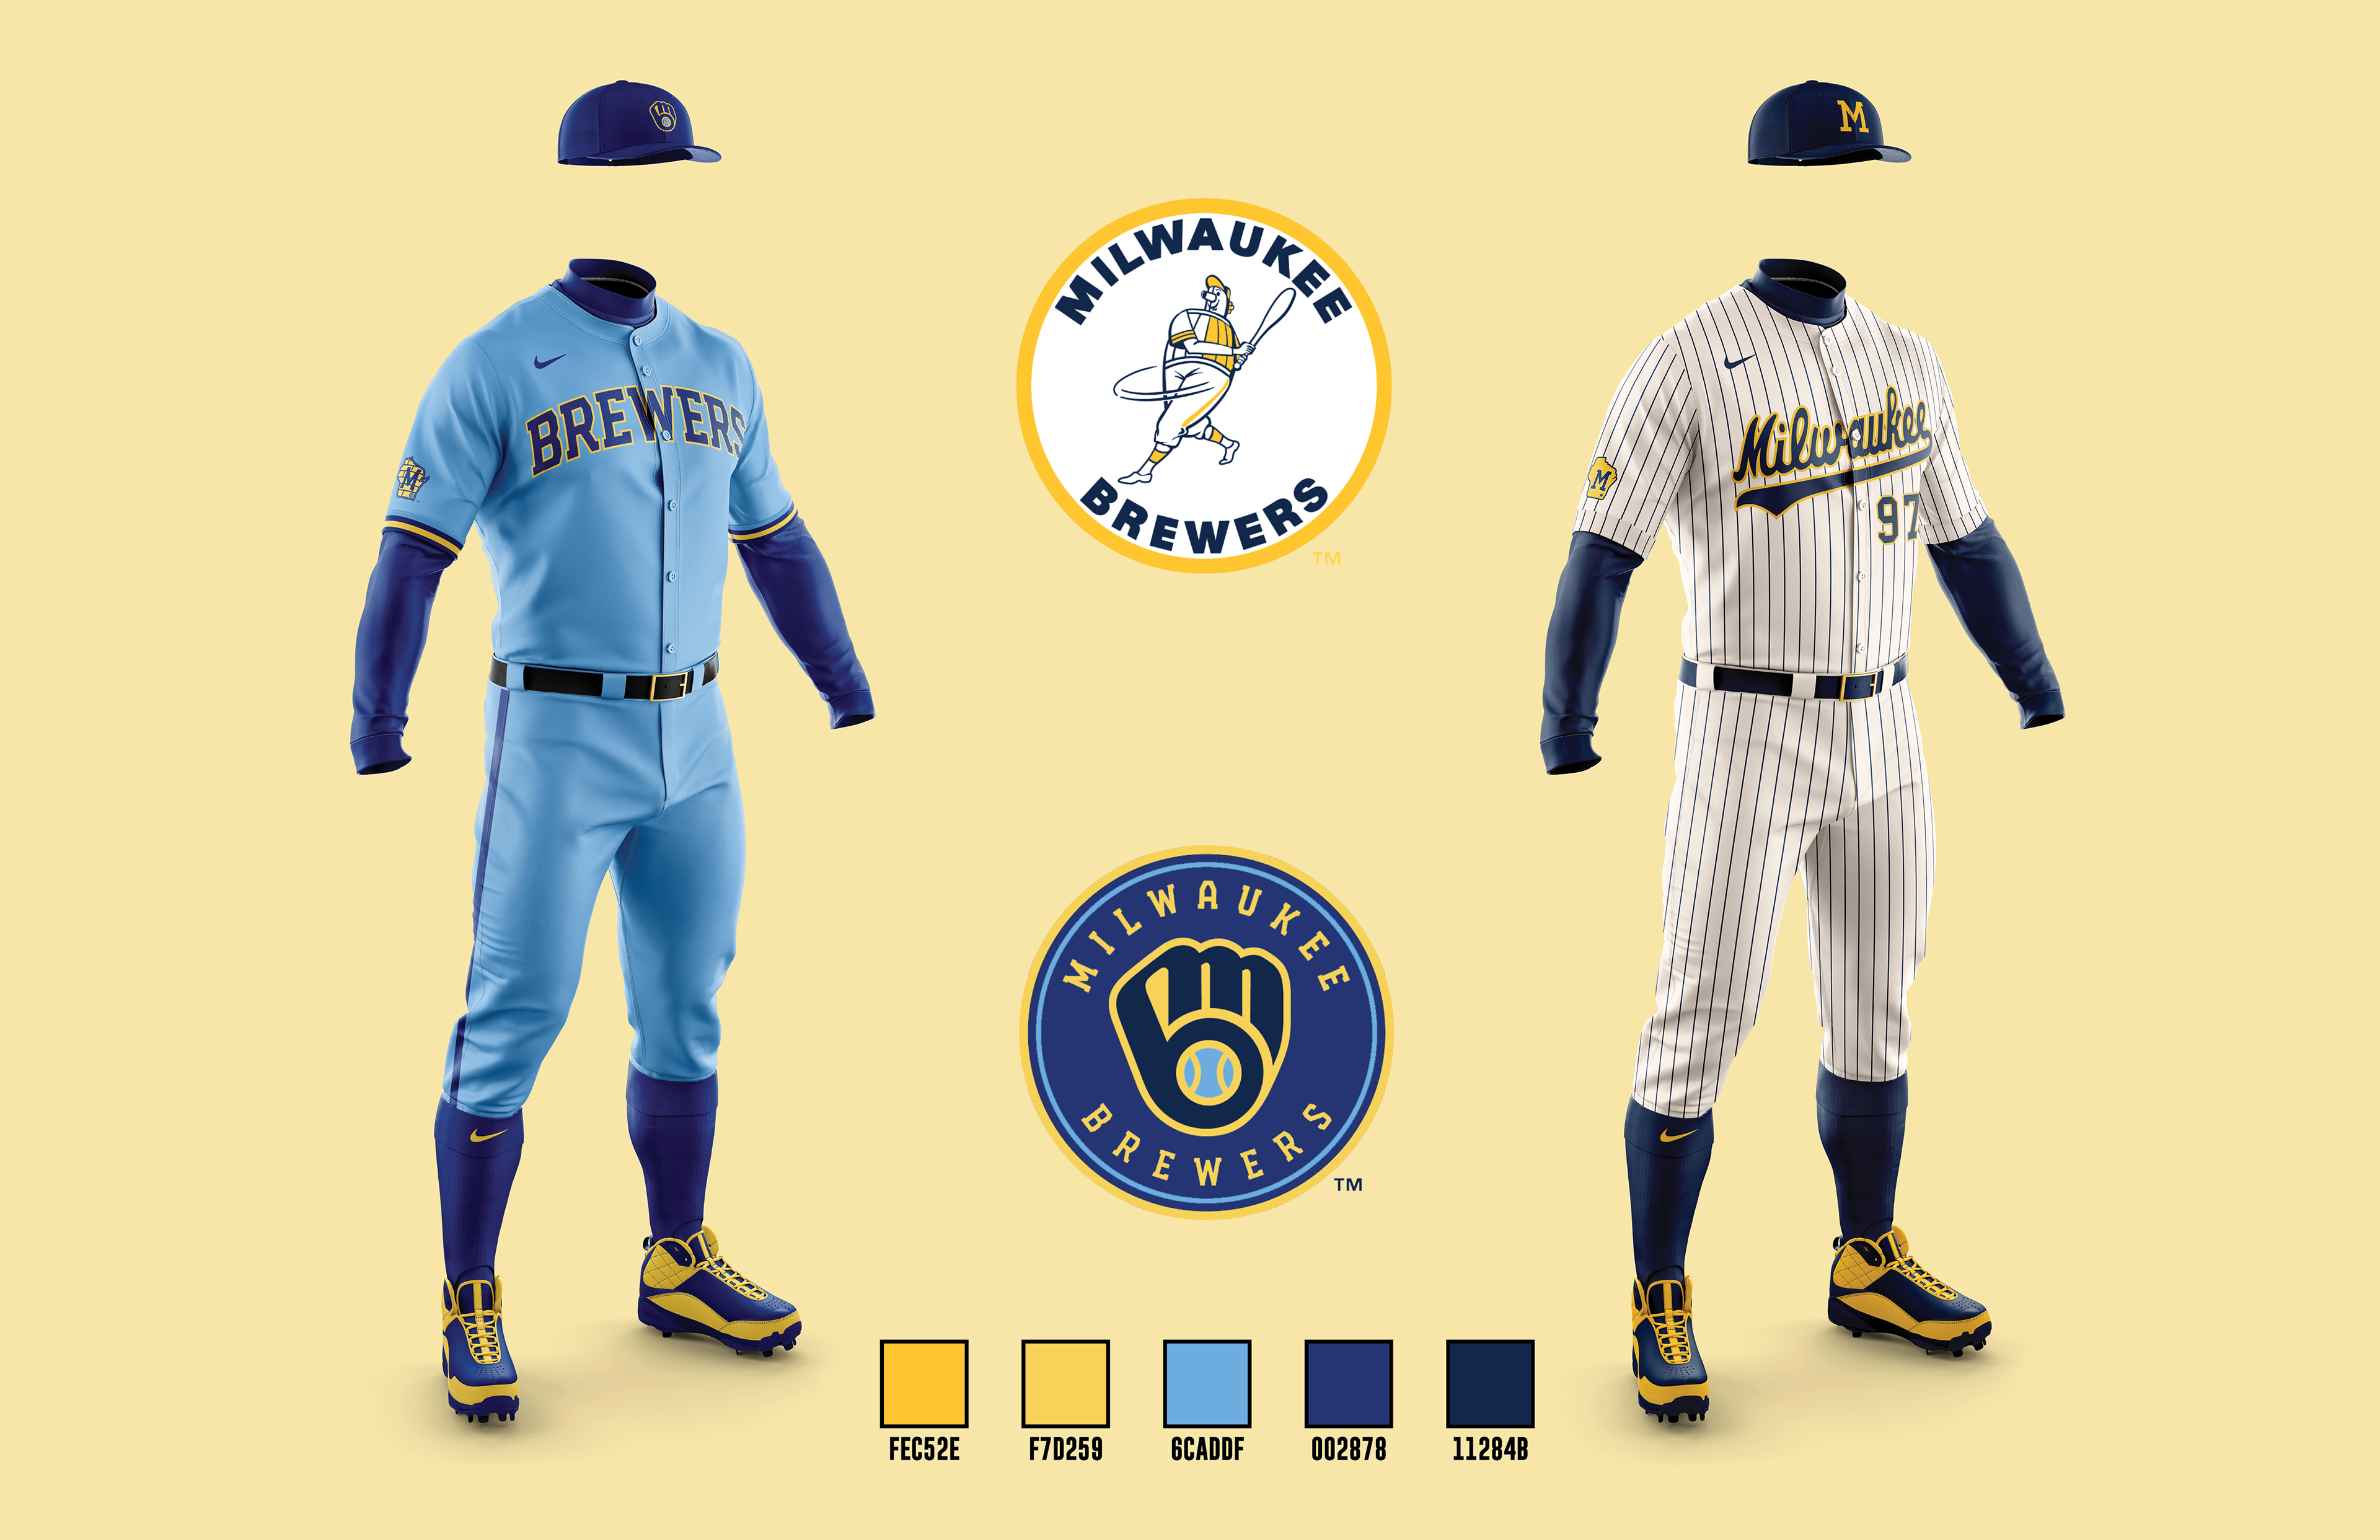 detroit tigers concept uniforms